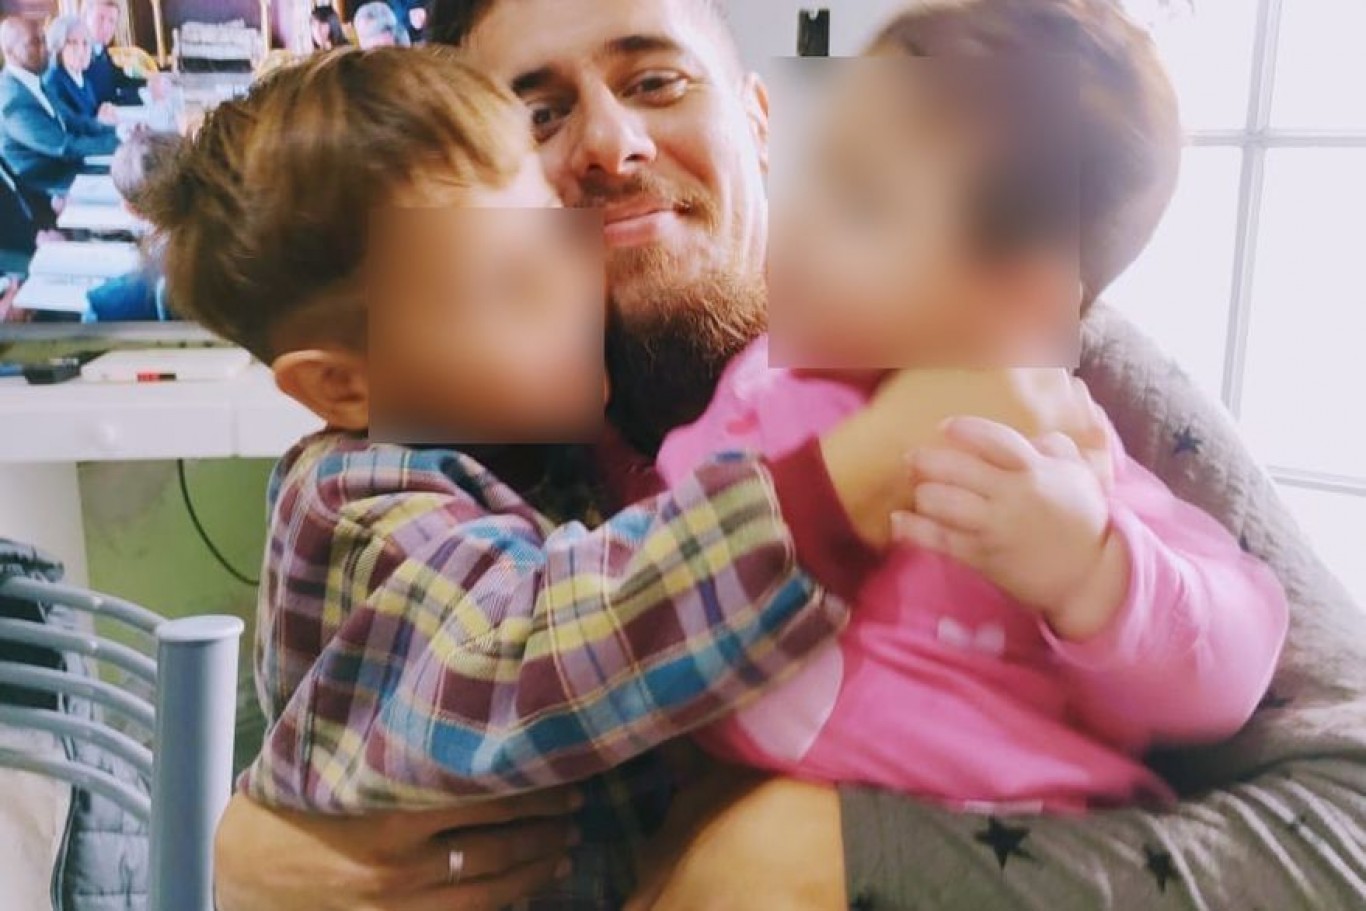 El tío del niño asesinado a golpes por su madre: "La vida de ella y su pareja era de violencia y adicciones"